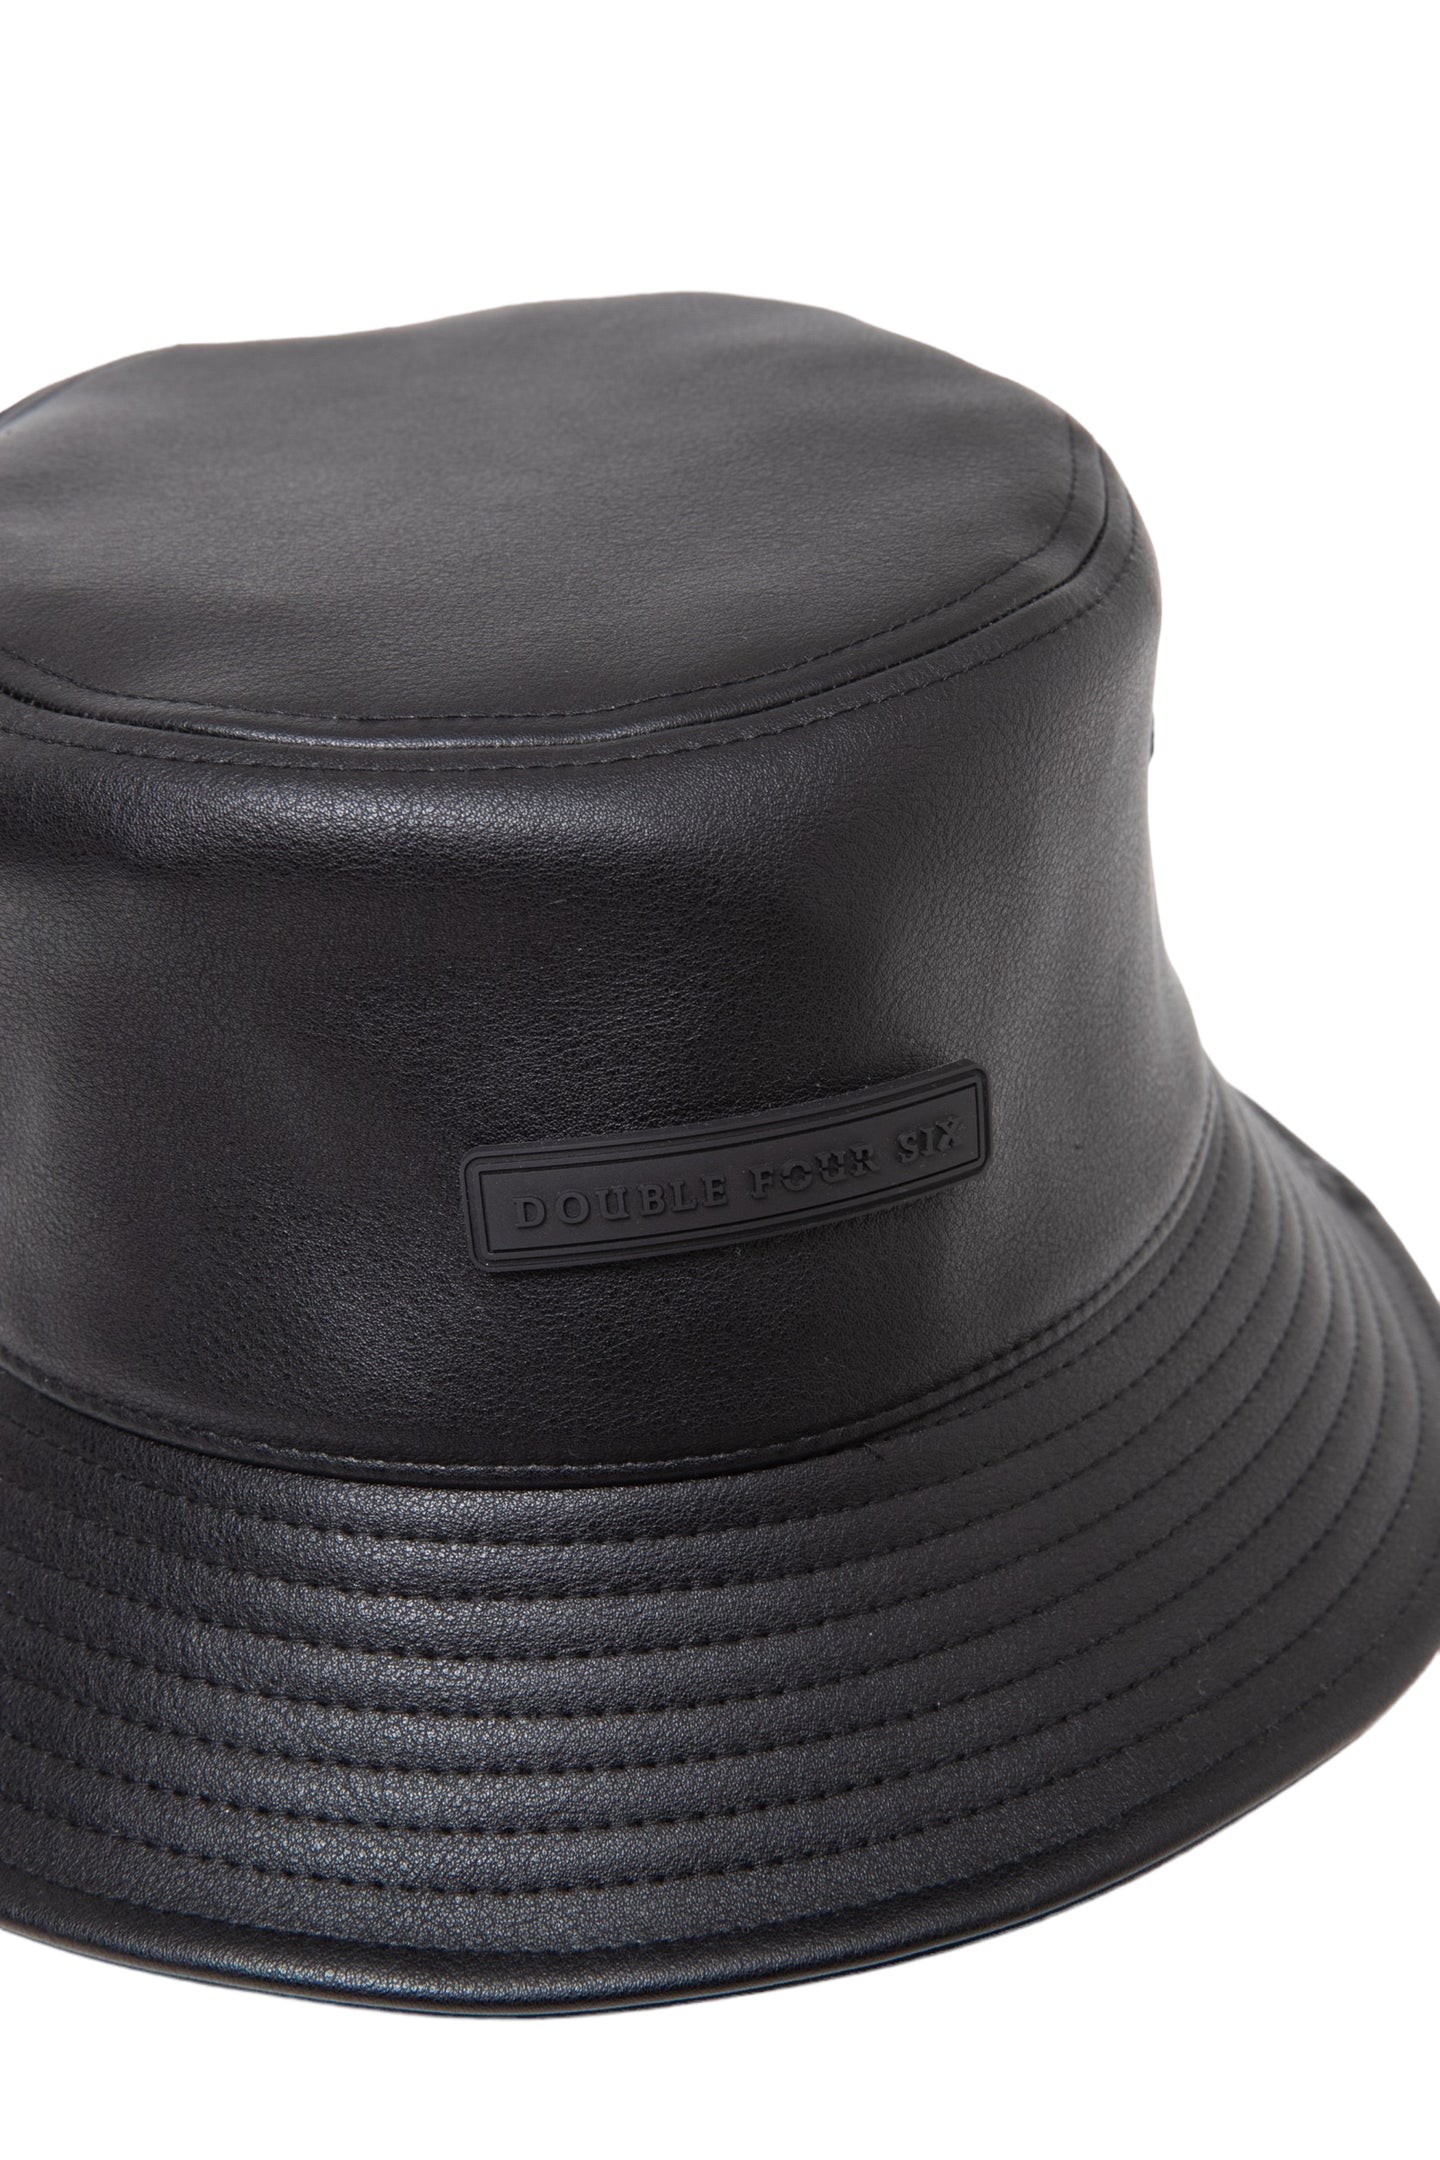 【第二弾アイテム】DOUBLE FOUR SIX-Silicon Patch Eco Leather Bucket Hat Black